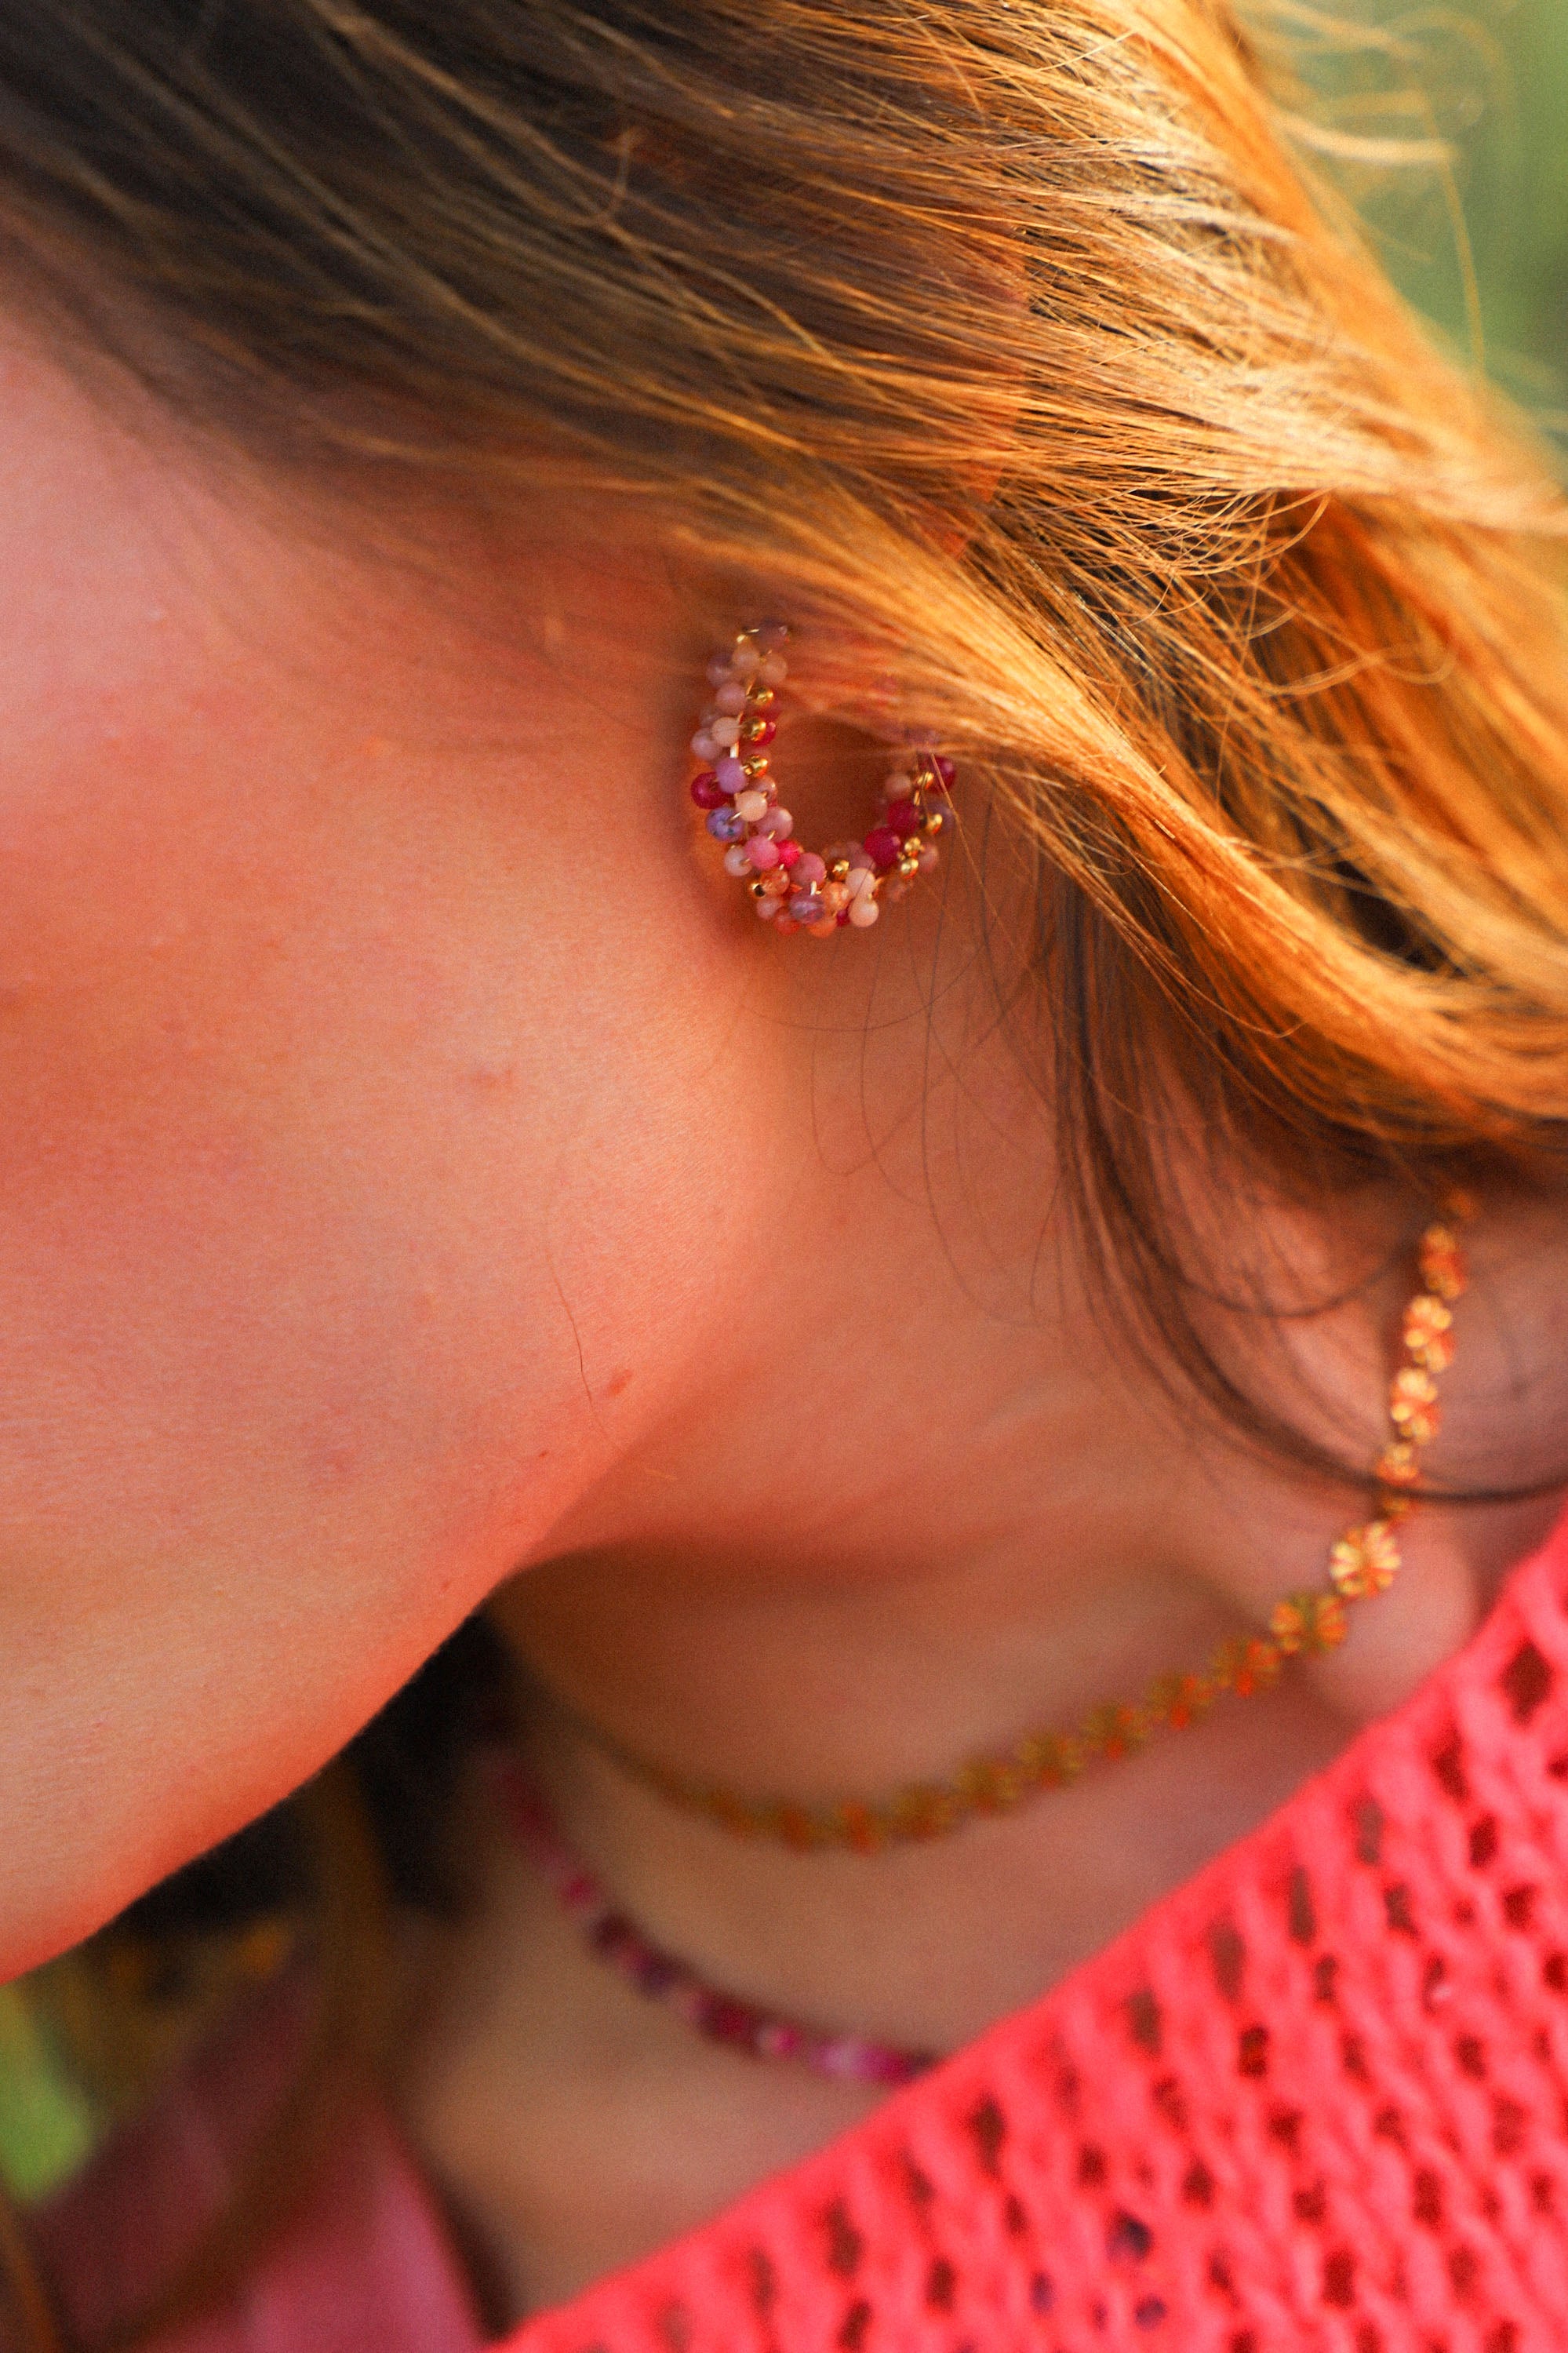 Boucles d'oreilles Jill, ici portées, des créoles moyennes ornées de perles roses tissées.